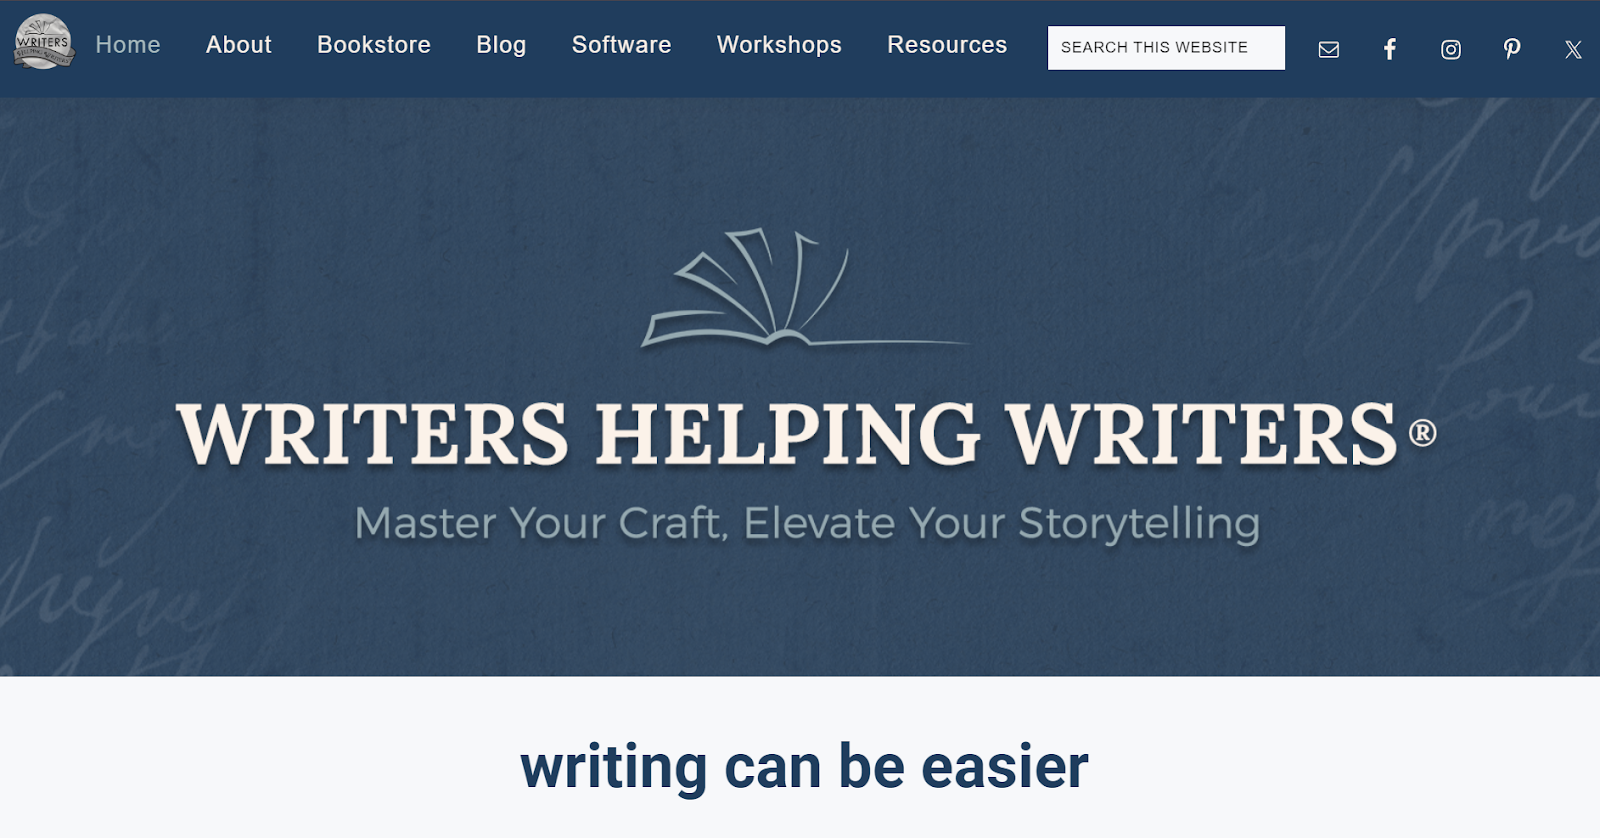 Writers Helping Writers - Website Homepage